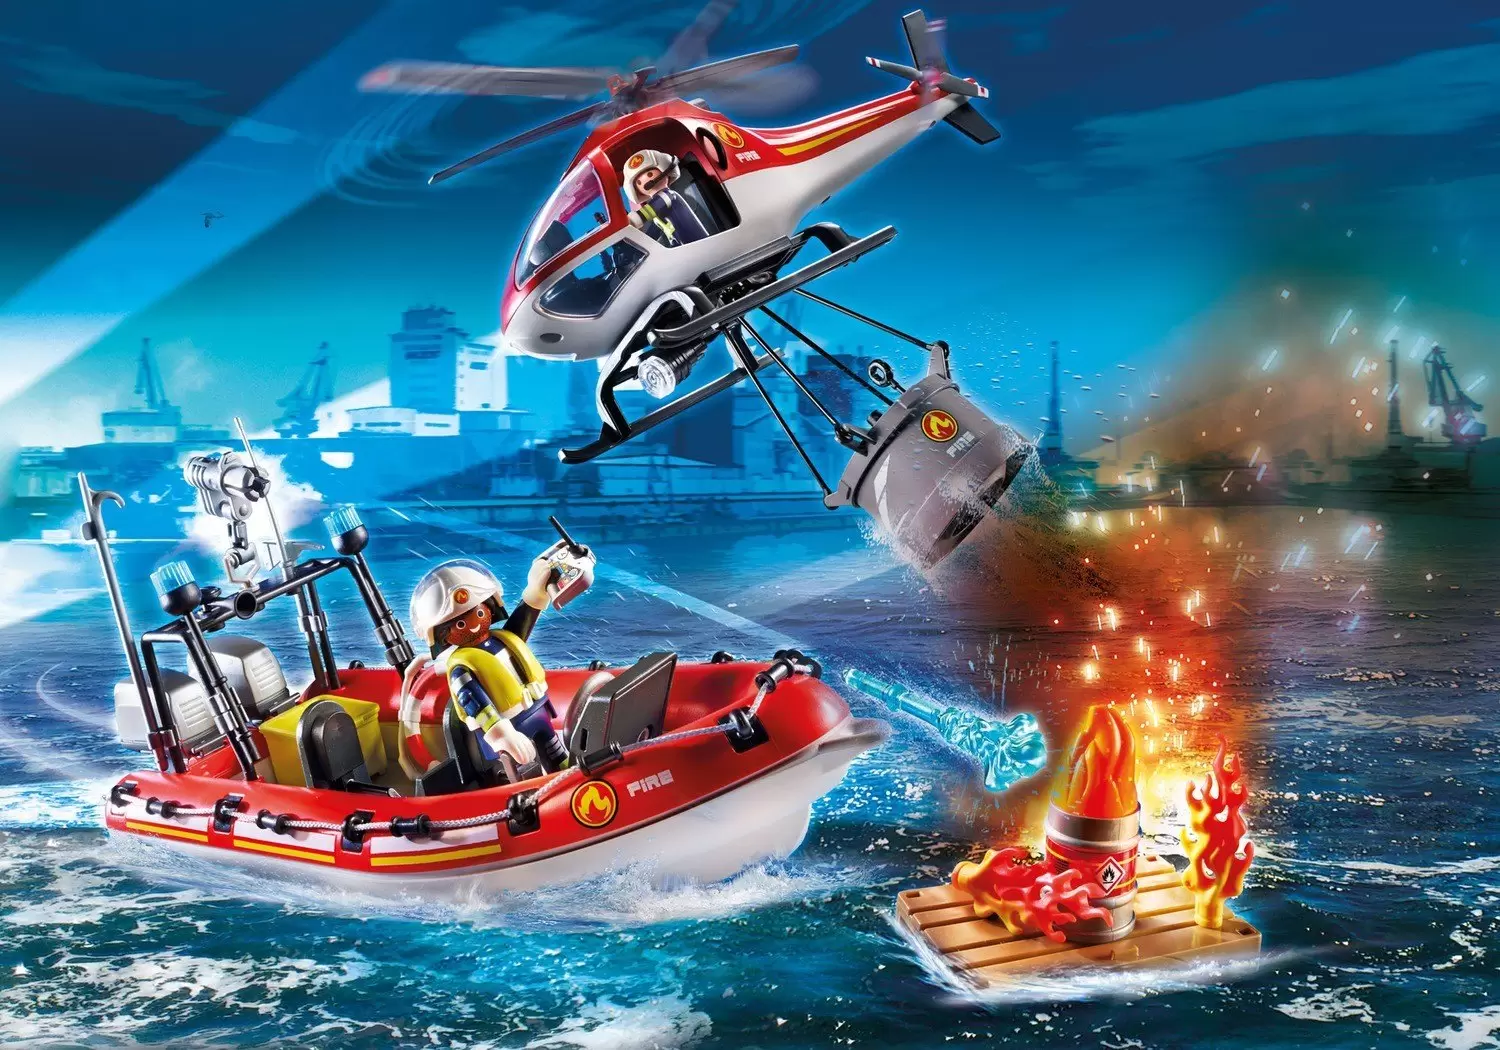 Playmobil - Sauveteurs / hélicoptère de sauvetage